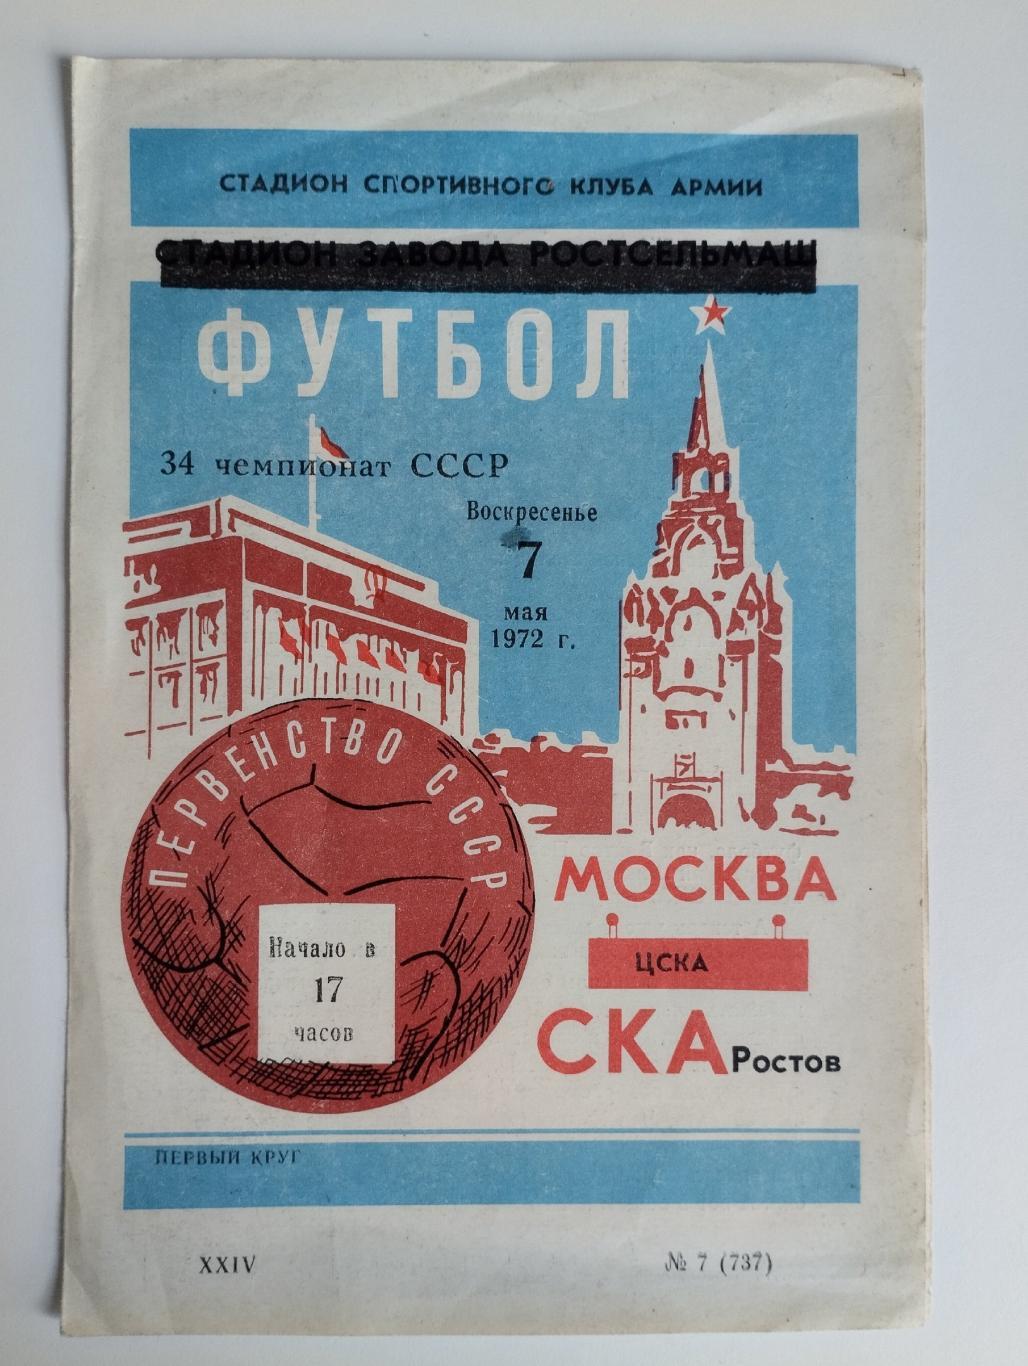 СКА Ростов-на-Дону - ЦСКА Москва 1972